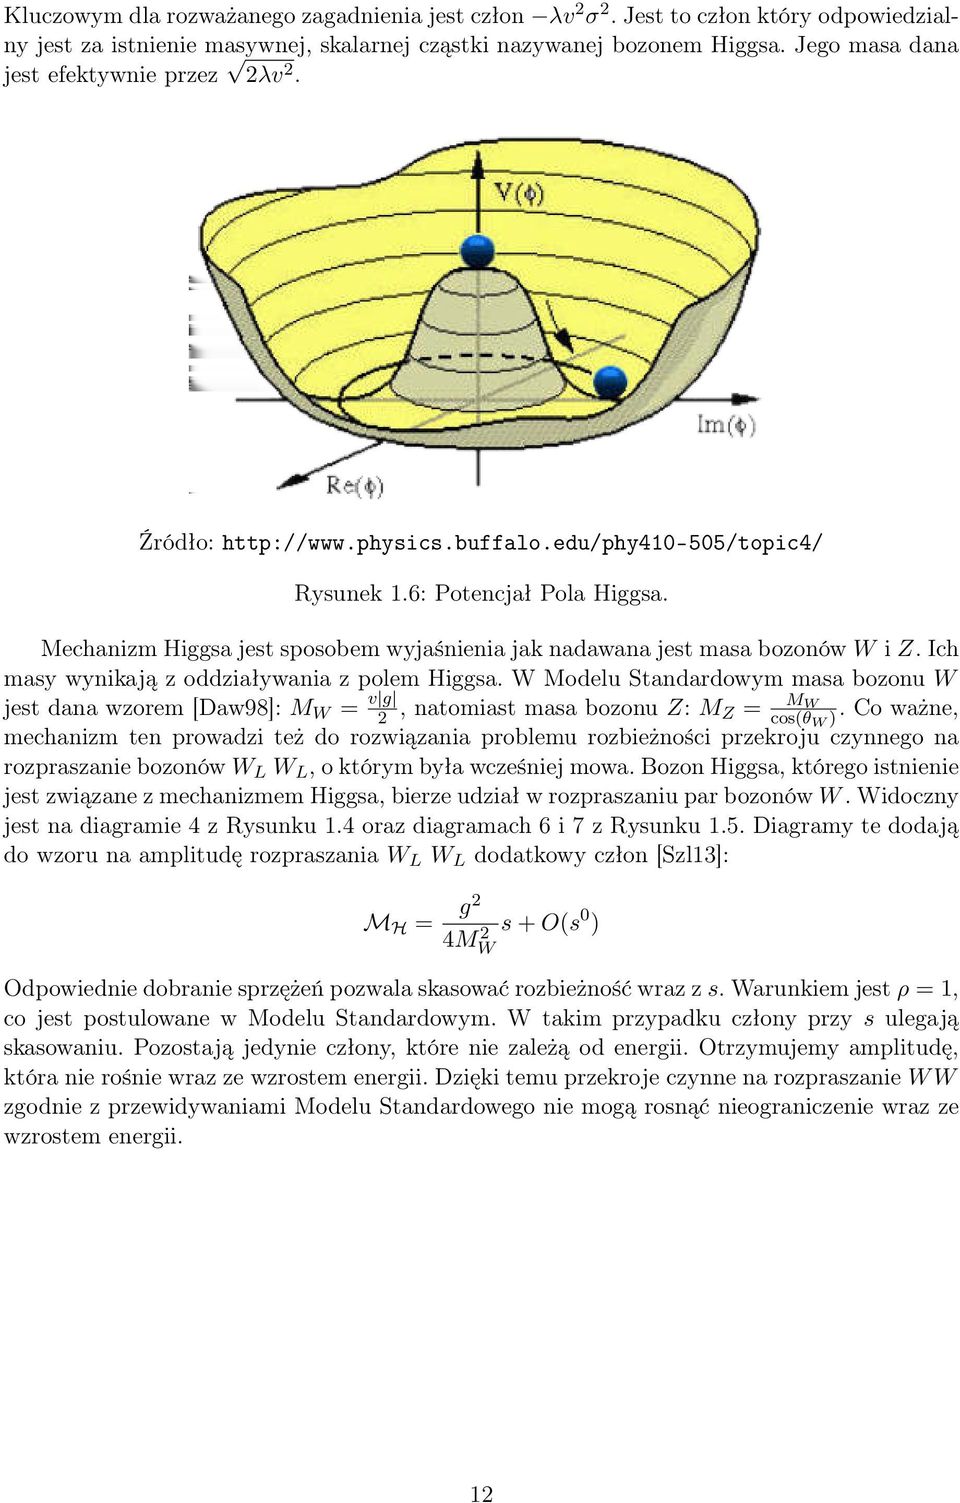 Mechanizm Higgsa jest sposobem wyjaśnienia jak nadawana jest masa bozonów W i Z. Ich masy wynikają z oddziaływania z polem Higgsa.